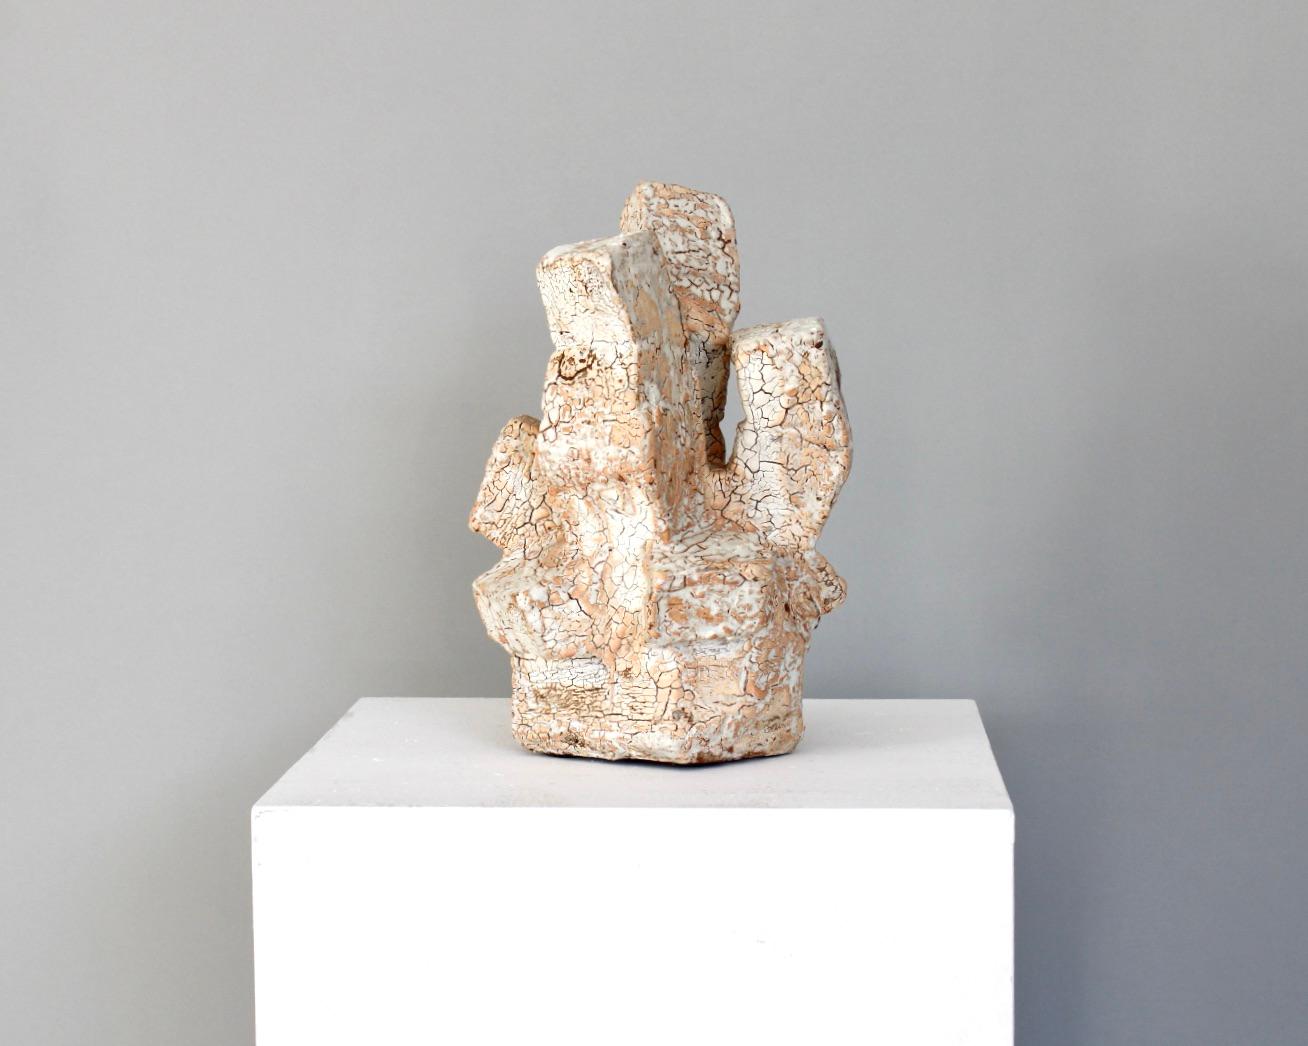 Eric Aston Französische abstrakte Keramikskulptur mit stark strukturierter und krakelierter  glasierte Oberfläche. Holz gebrannte Keramik .
Astoul lebt und arbeitet in LaBorne, Frankreich. 
